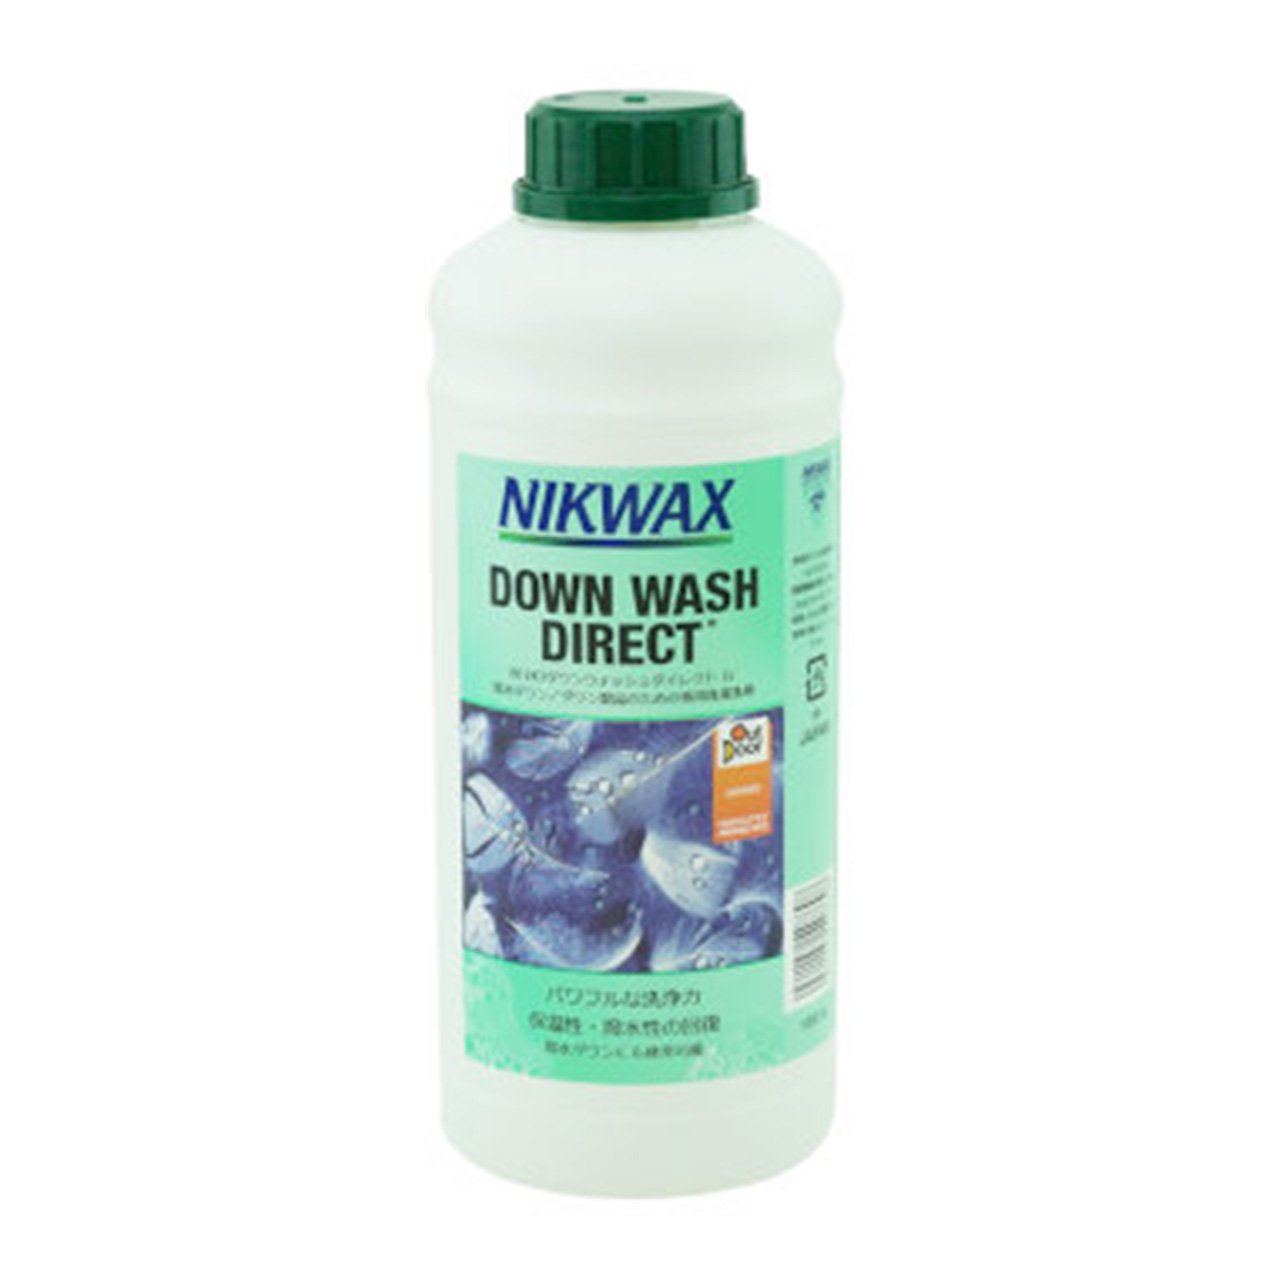 ニクワックス(NIKWAX) ダウンウォッシュダイレクト 1Lト 洗剤 EBE1K3